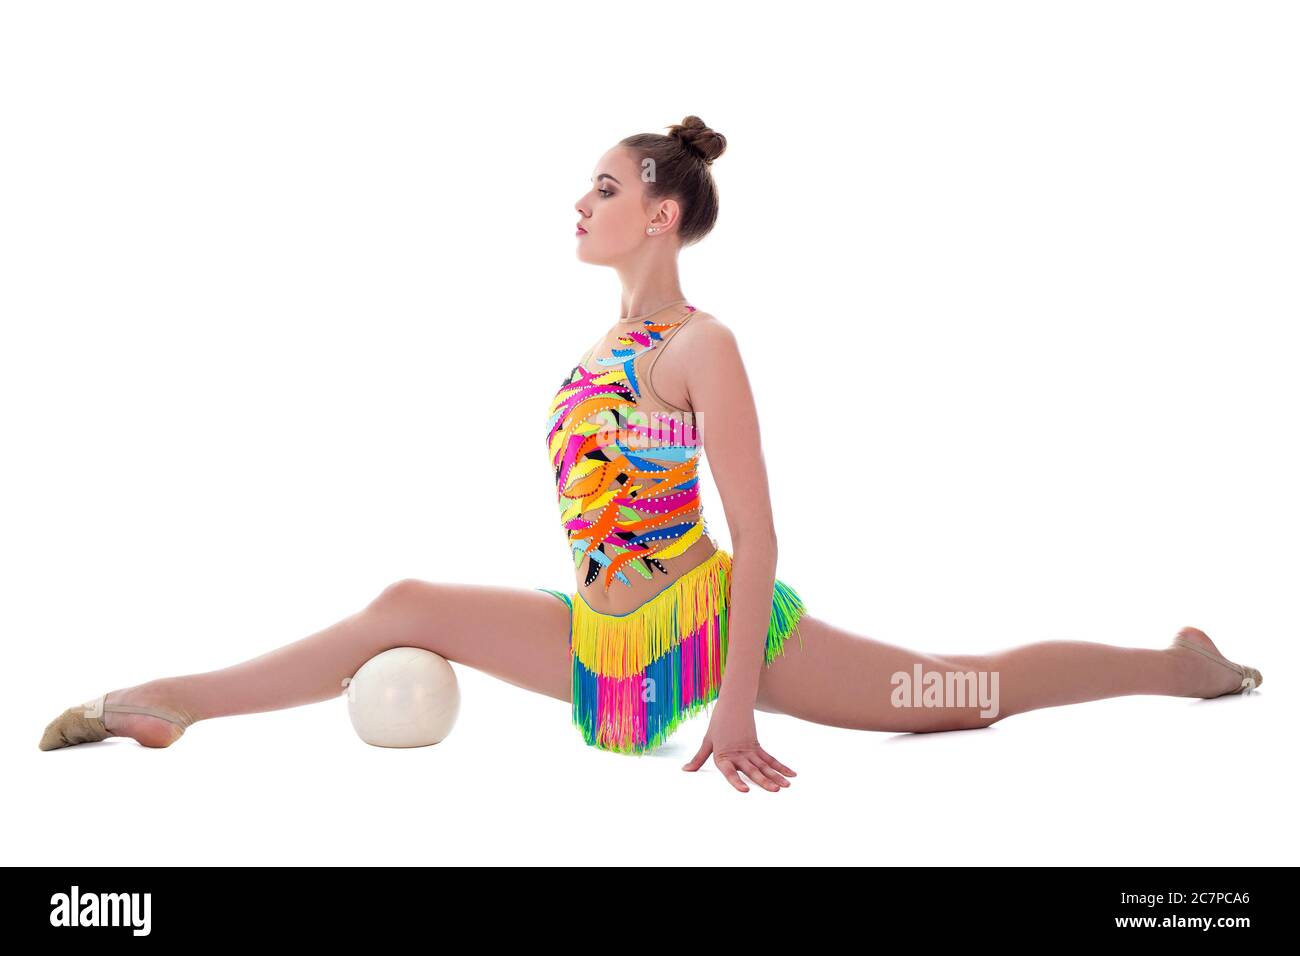 bella ginnastica sportiva donna facendo esercizi con palla isolata su sfondo bianco Foto Stock